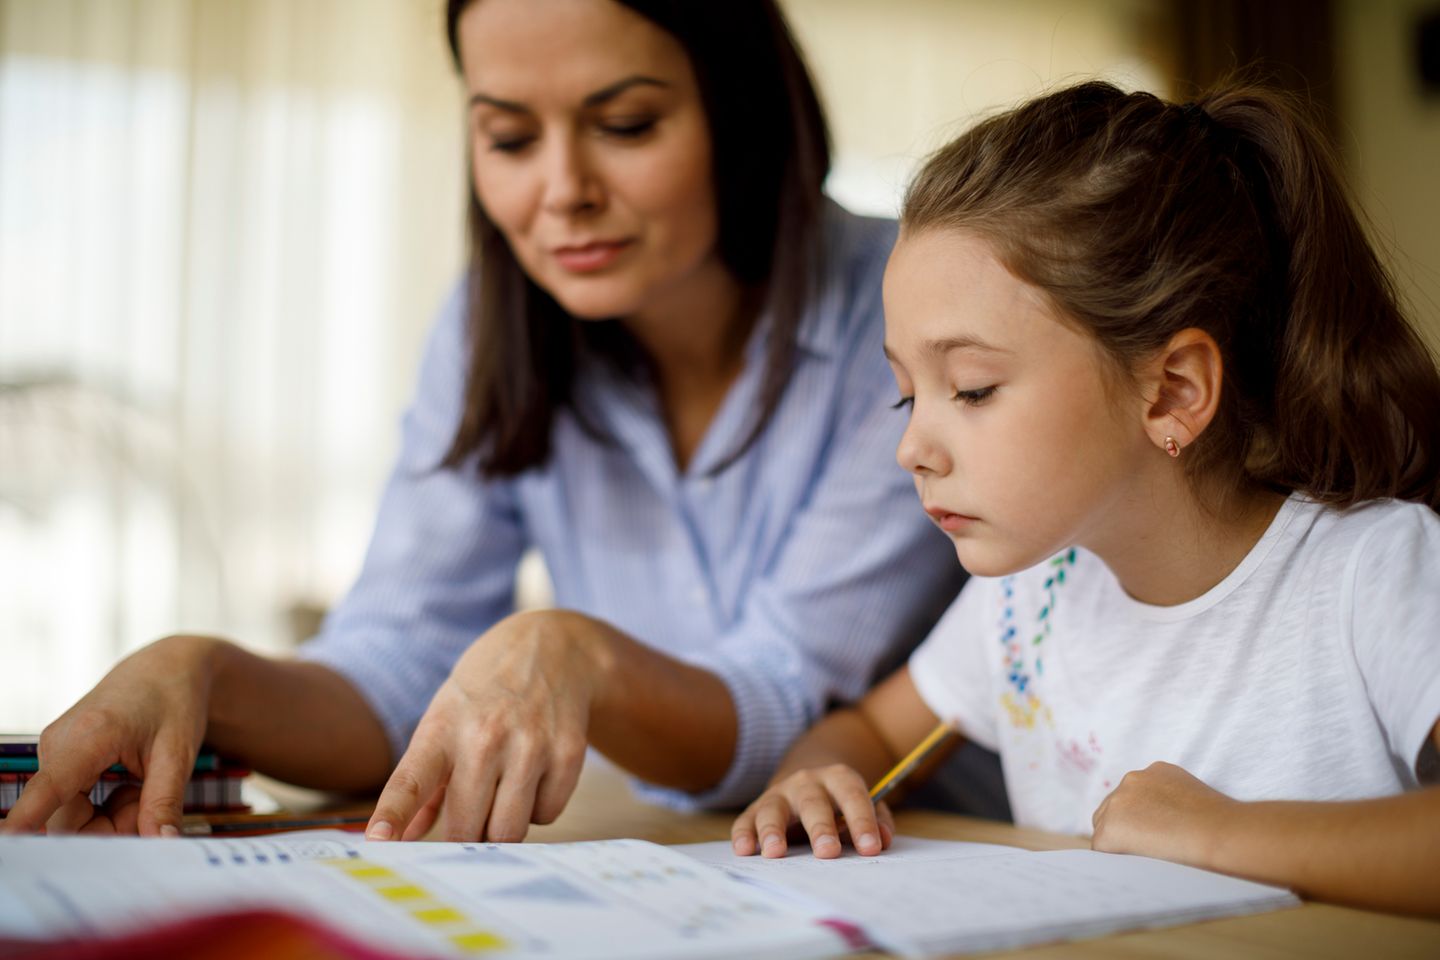 "Viele Eltern halten ihre Kinder für hochbegabt, obwohl sie es nicht sind" – Eine Lehrerin berichtet